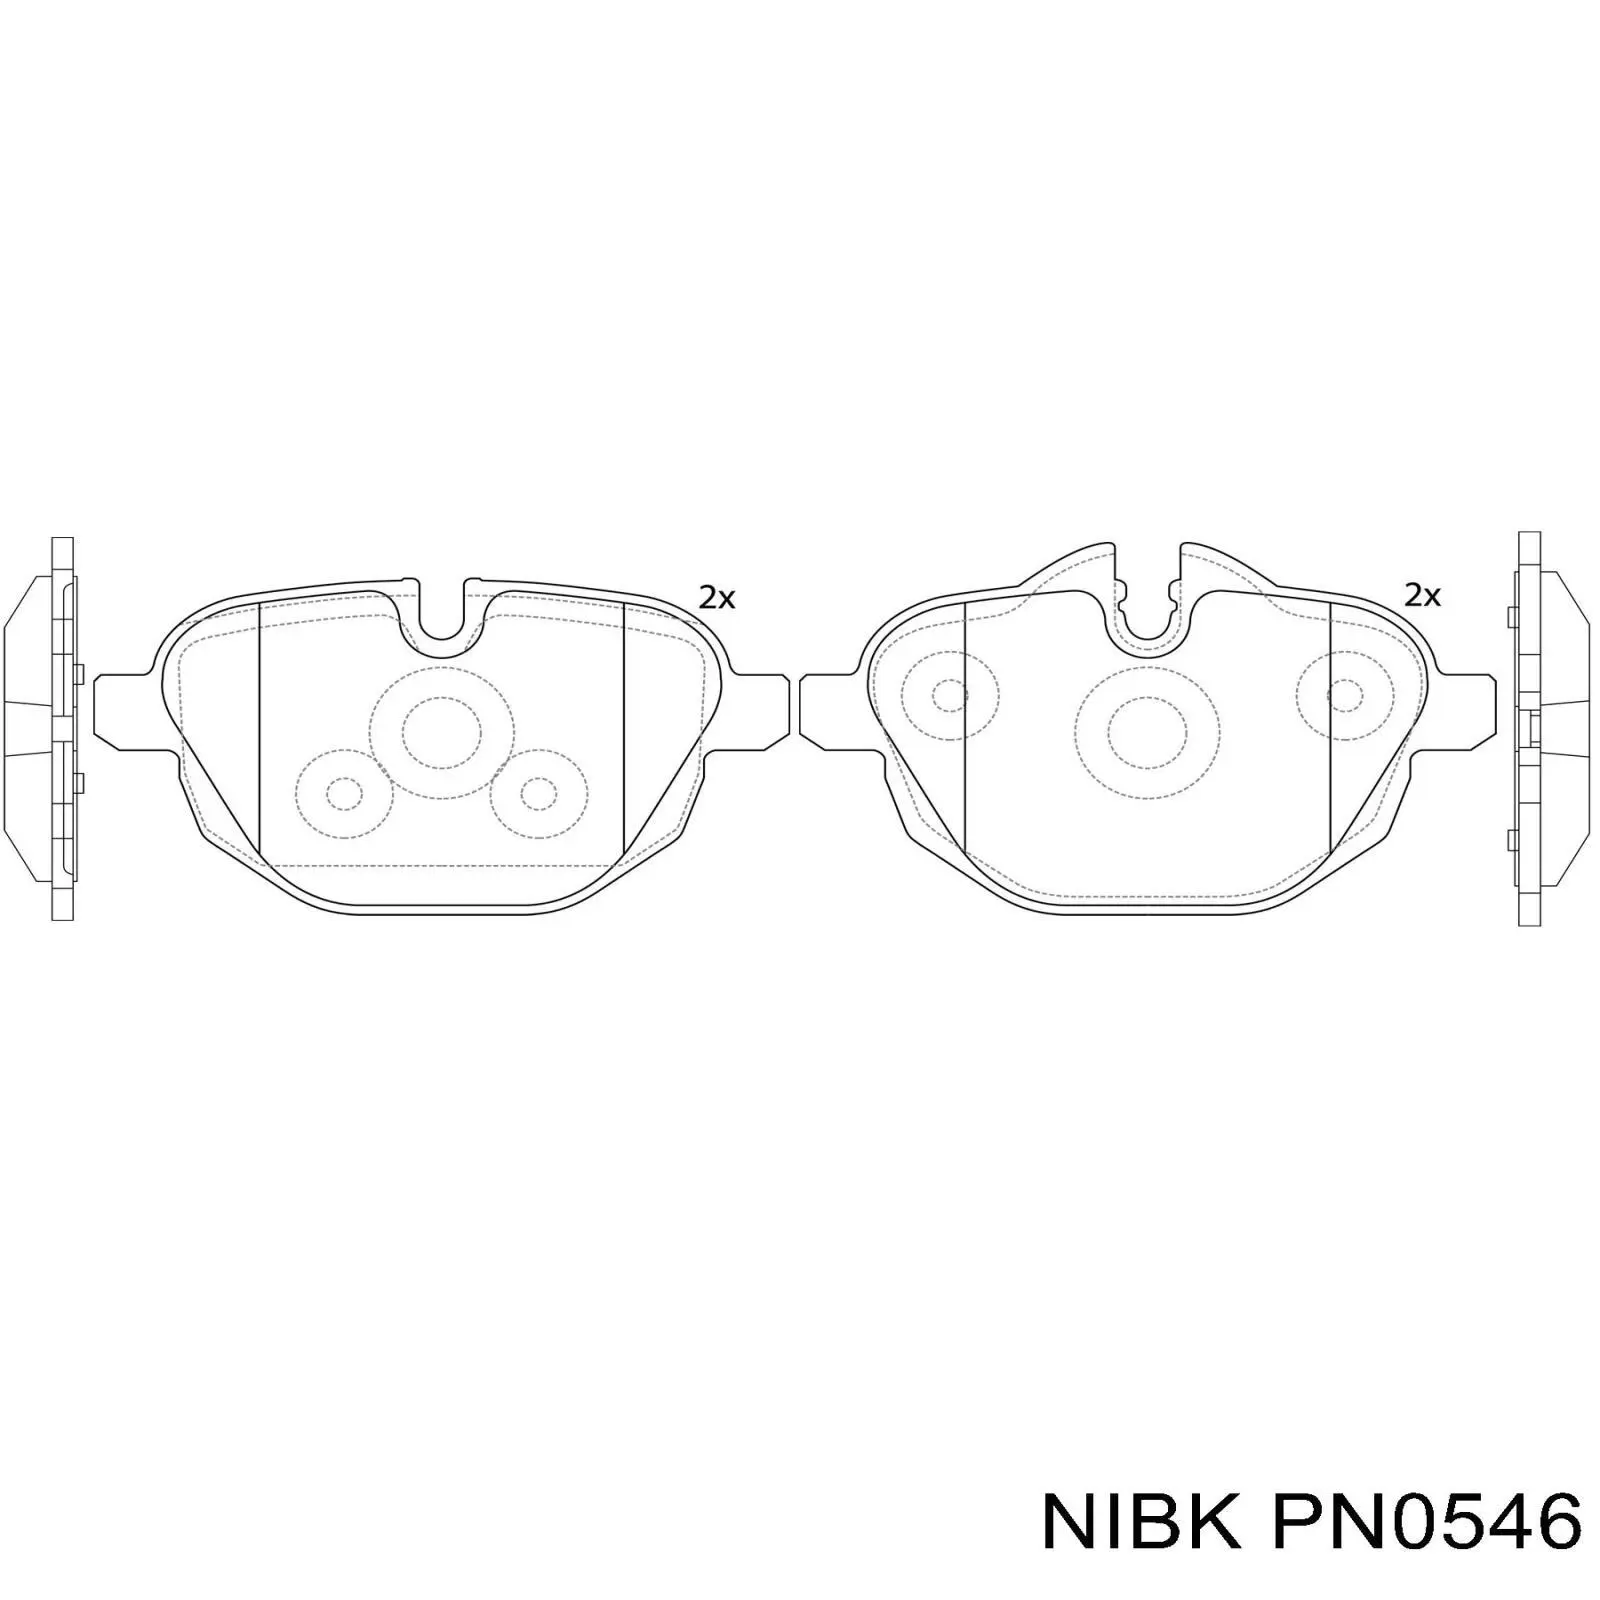 PN0546 Nibk колодки тормозные задние дисковые